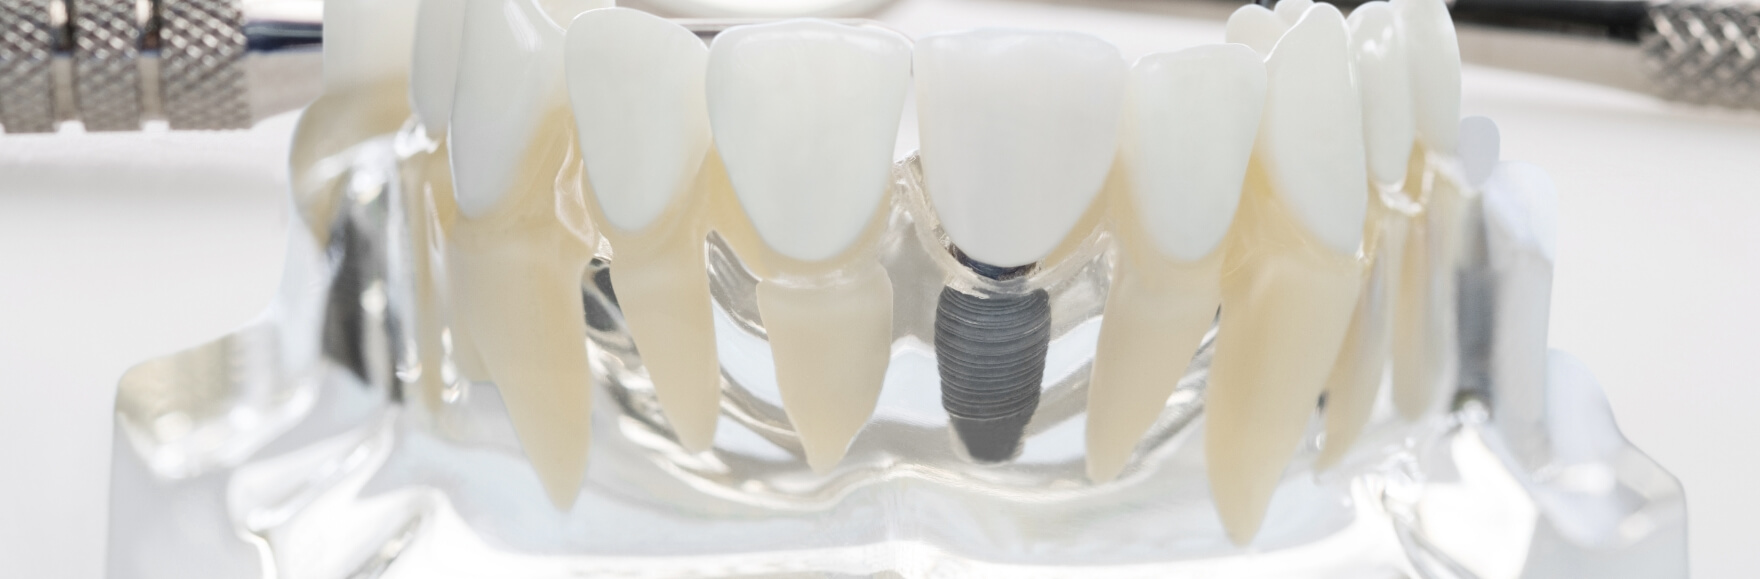 大切な天然歯を可能な限り残す・守る渋谷KU歯科の治療メニュー